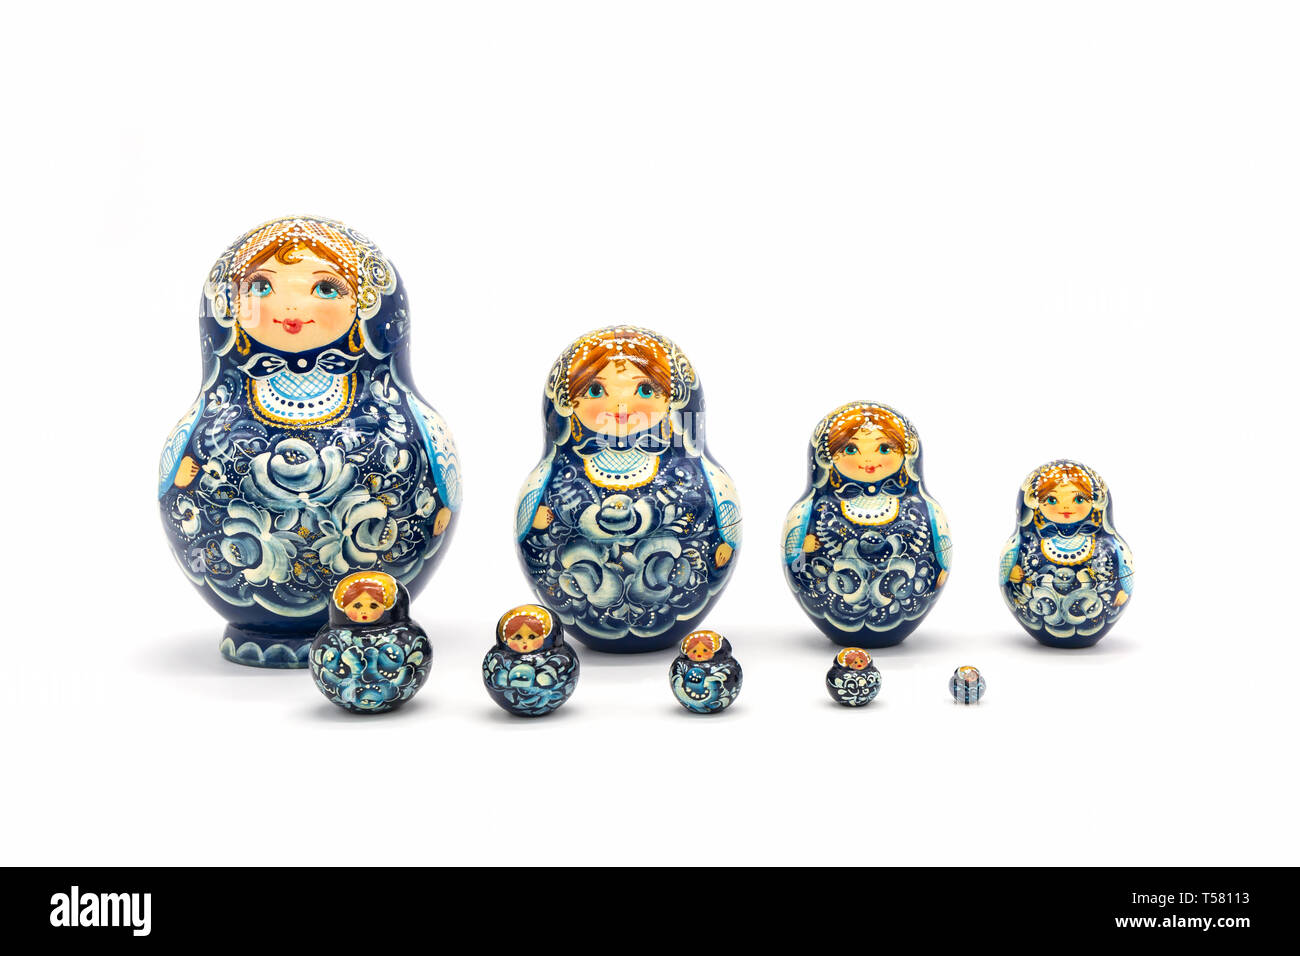 Matrjoschka Puppen isoliert auf einem weißen Hintergrund. Russische Holzpuppe Souvenir. Russische Verschachtelung Puppen, Stapeln Puppen. Stockfoto